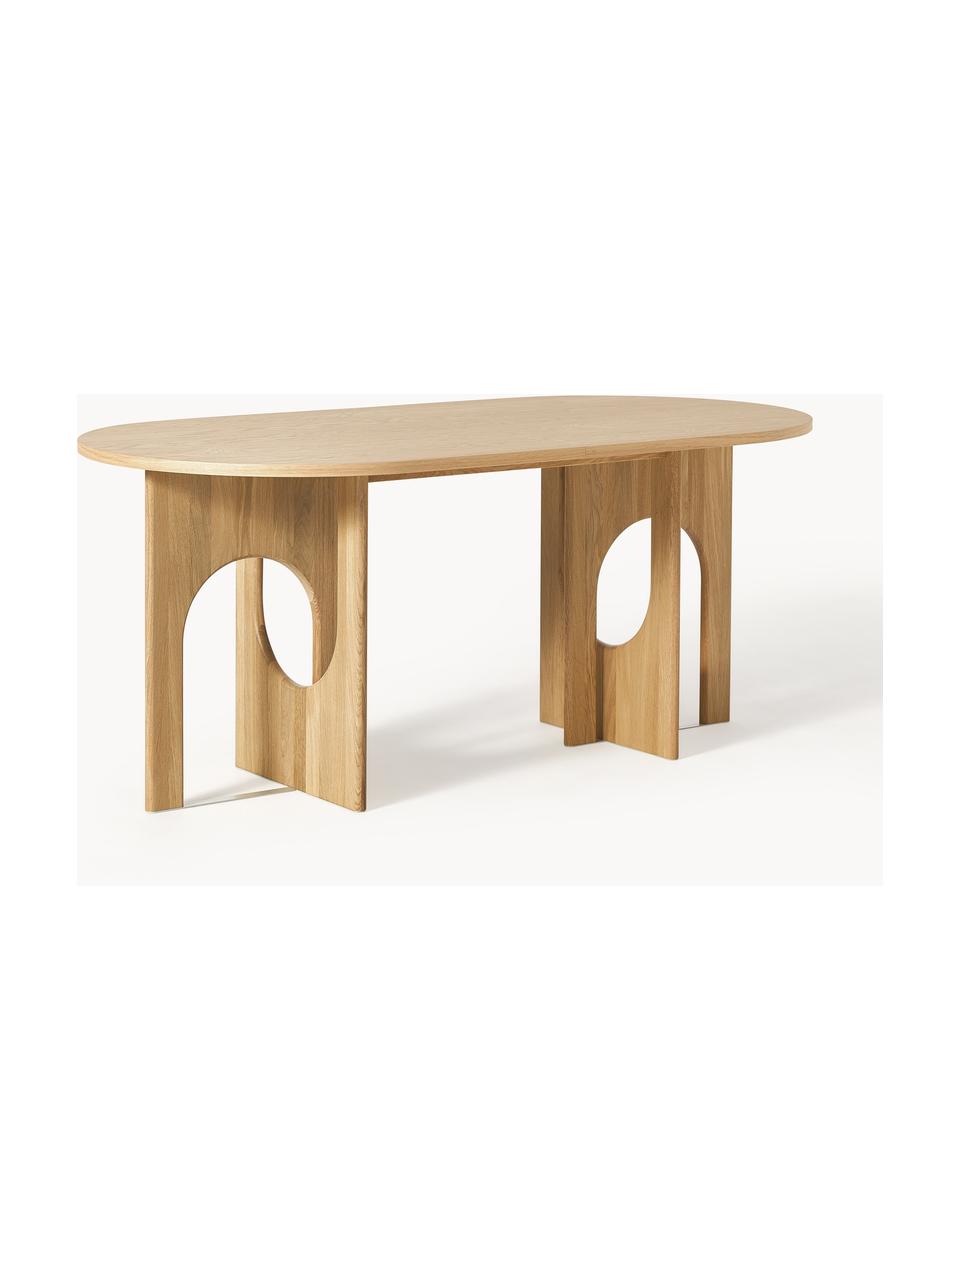 Ovaler Esstisch Apollo, in verschiedenen Größen, Tischplatte: Eichenholzfurnier, lackie, Beine: Eichenholz, lackiert, Met, Eichenholz, B 180 x T 90 cm